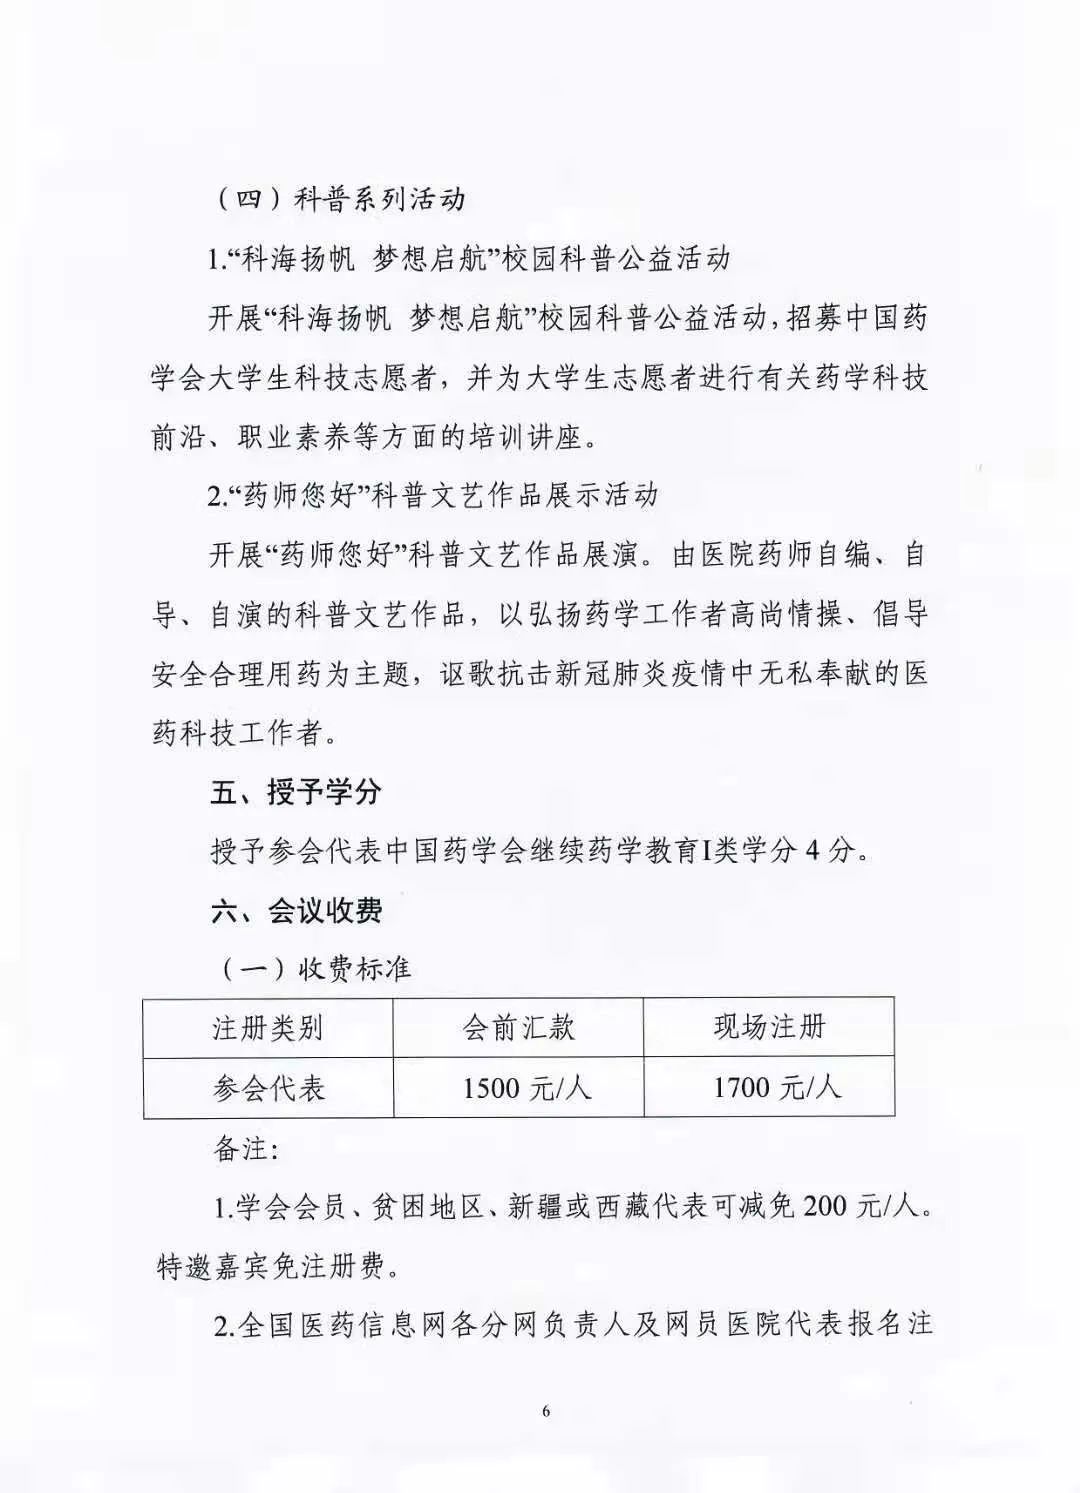 关于举办中国药学会第二十一届中国药师周的通知（第一轮）(图6)